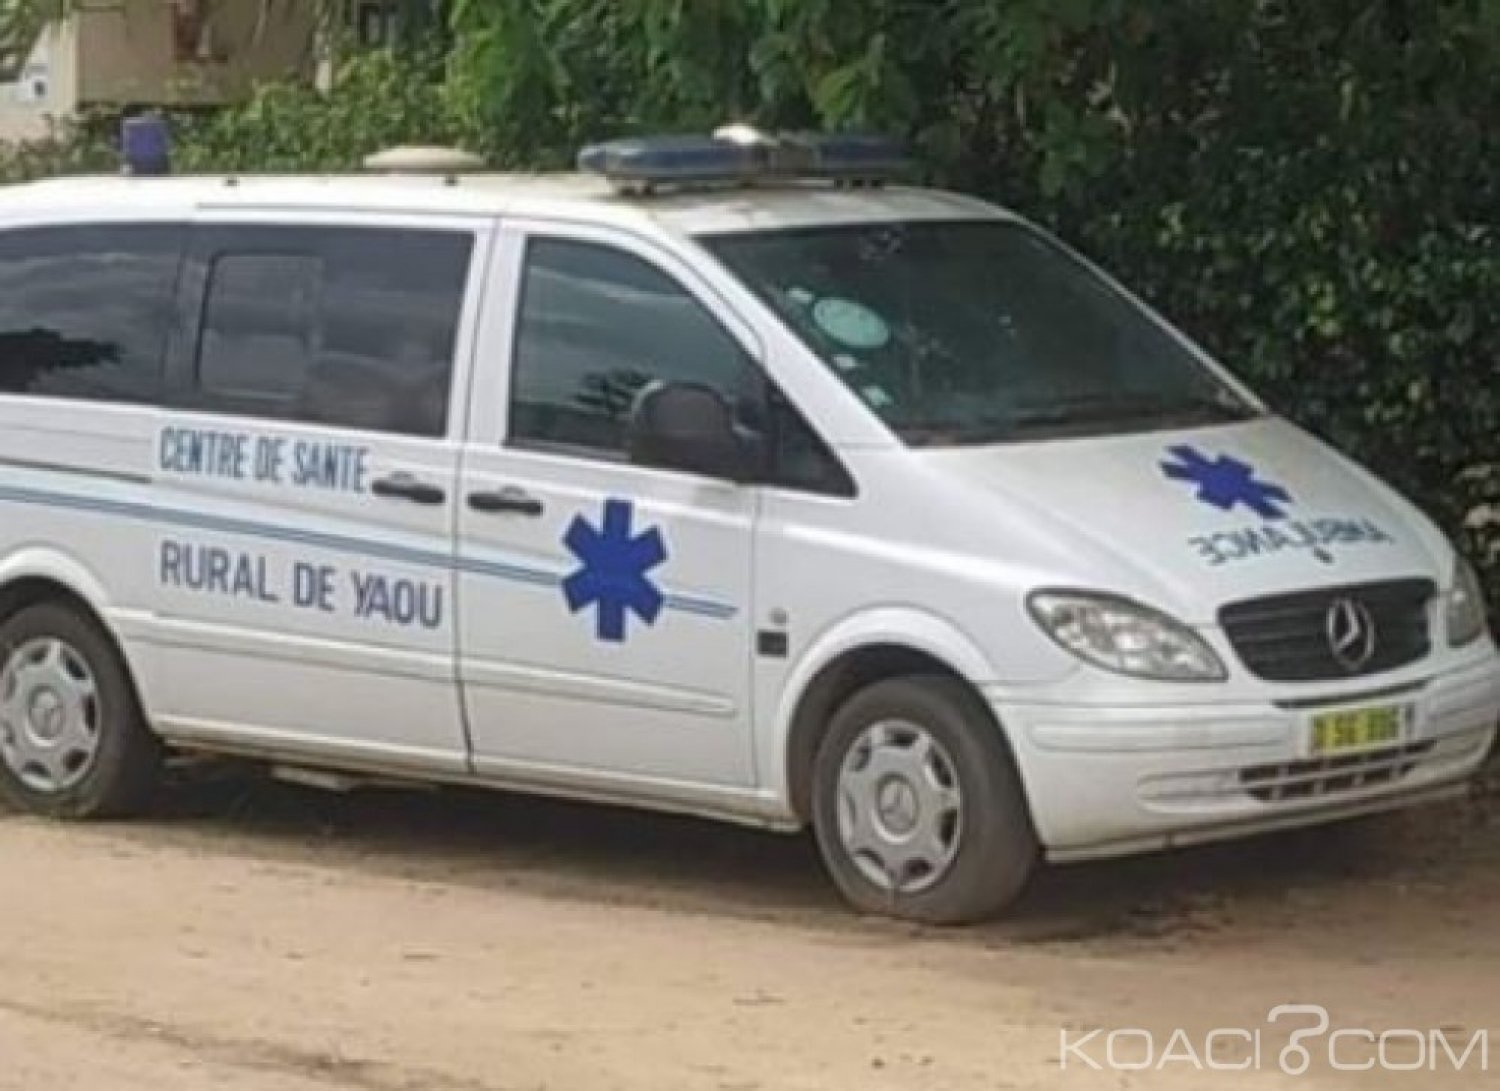 Côte d'Ivoire: Pour n'avoir pas été inaugurée, une ambulance refusée à  une femme enceinte qui perdra la vie